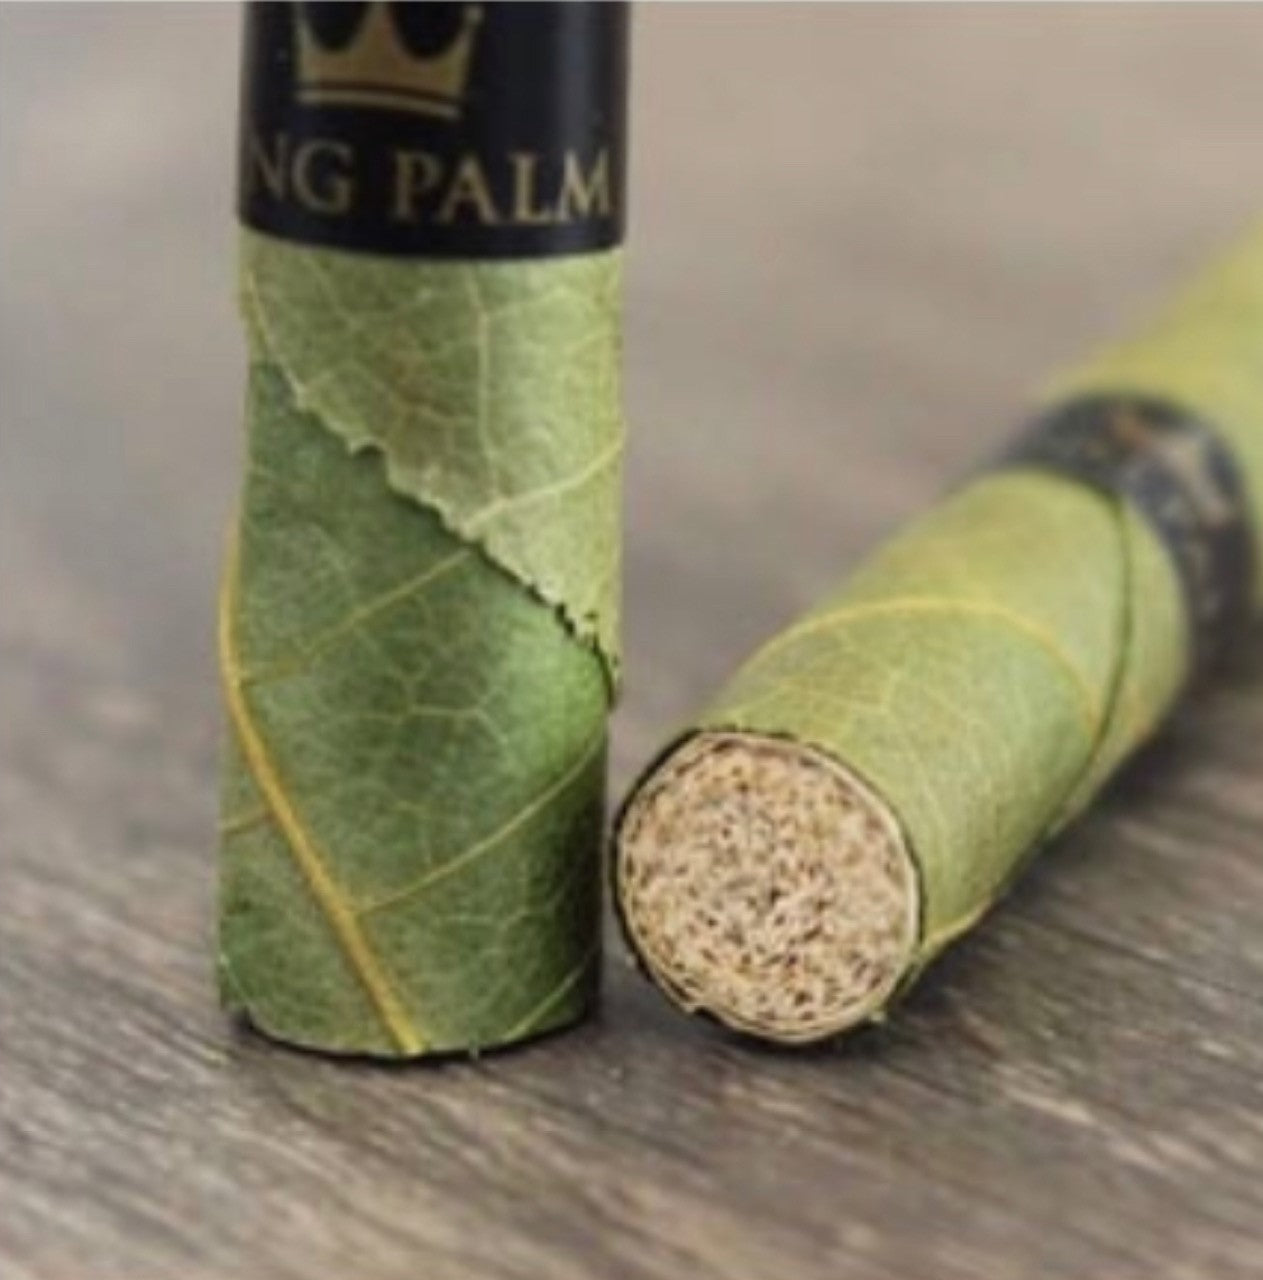 King Palm Natural Pre Wraps - Smoker's Emporium